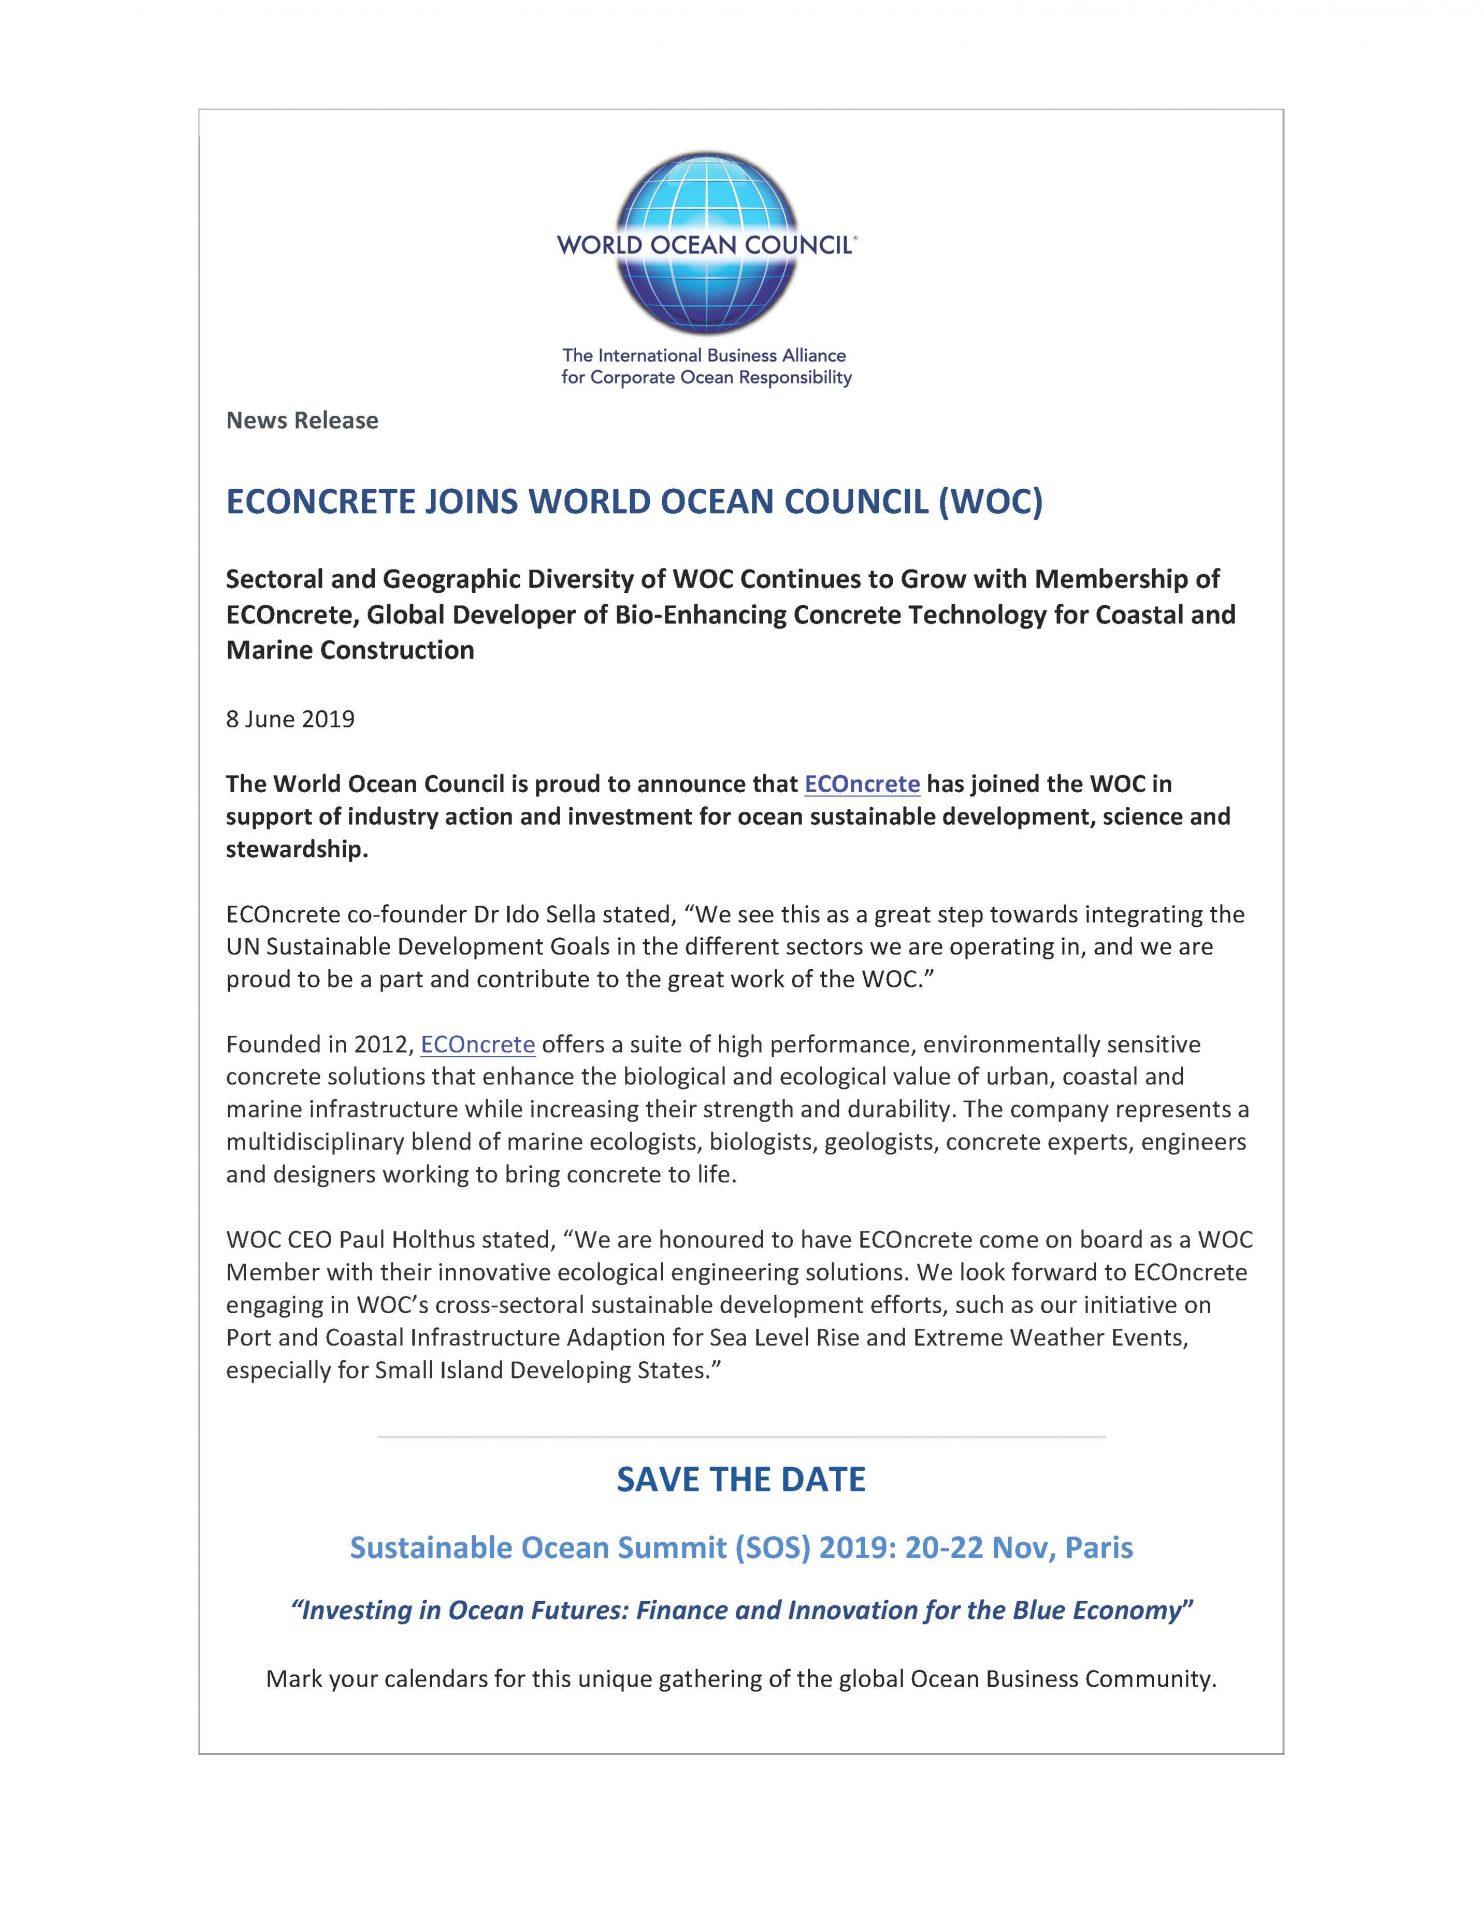 ECOncrete Joins World Ocean Council (WOC) - 8 June 2019